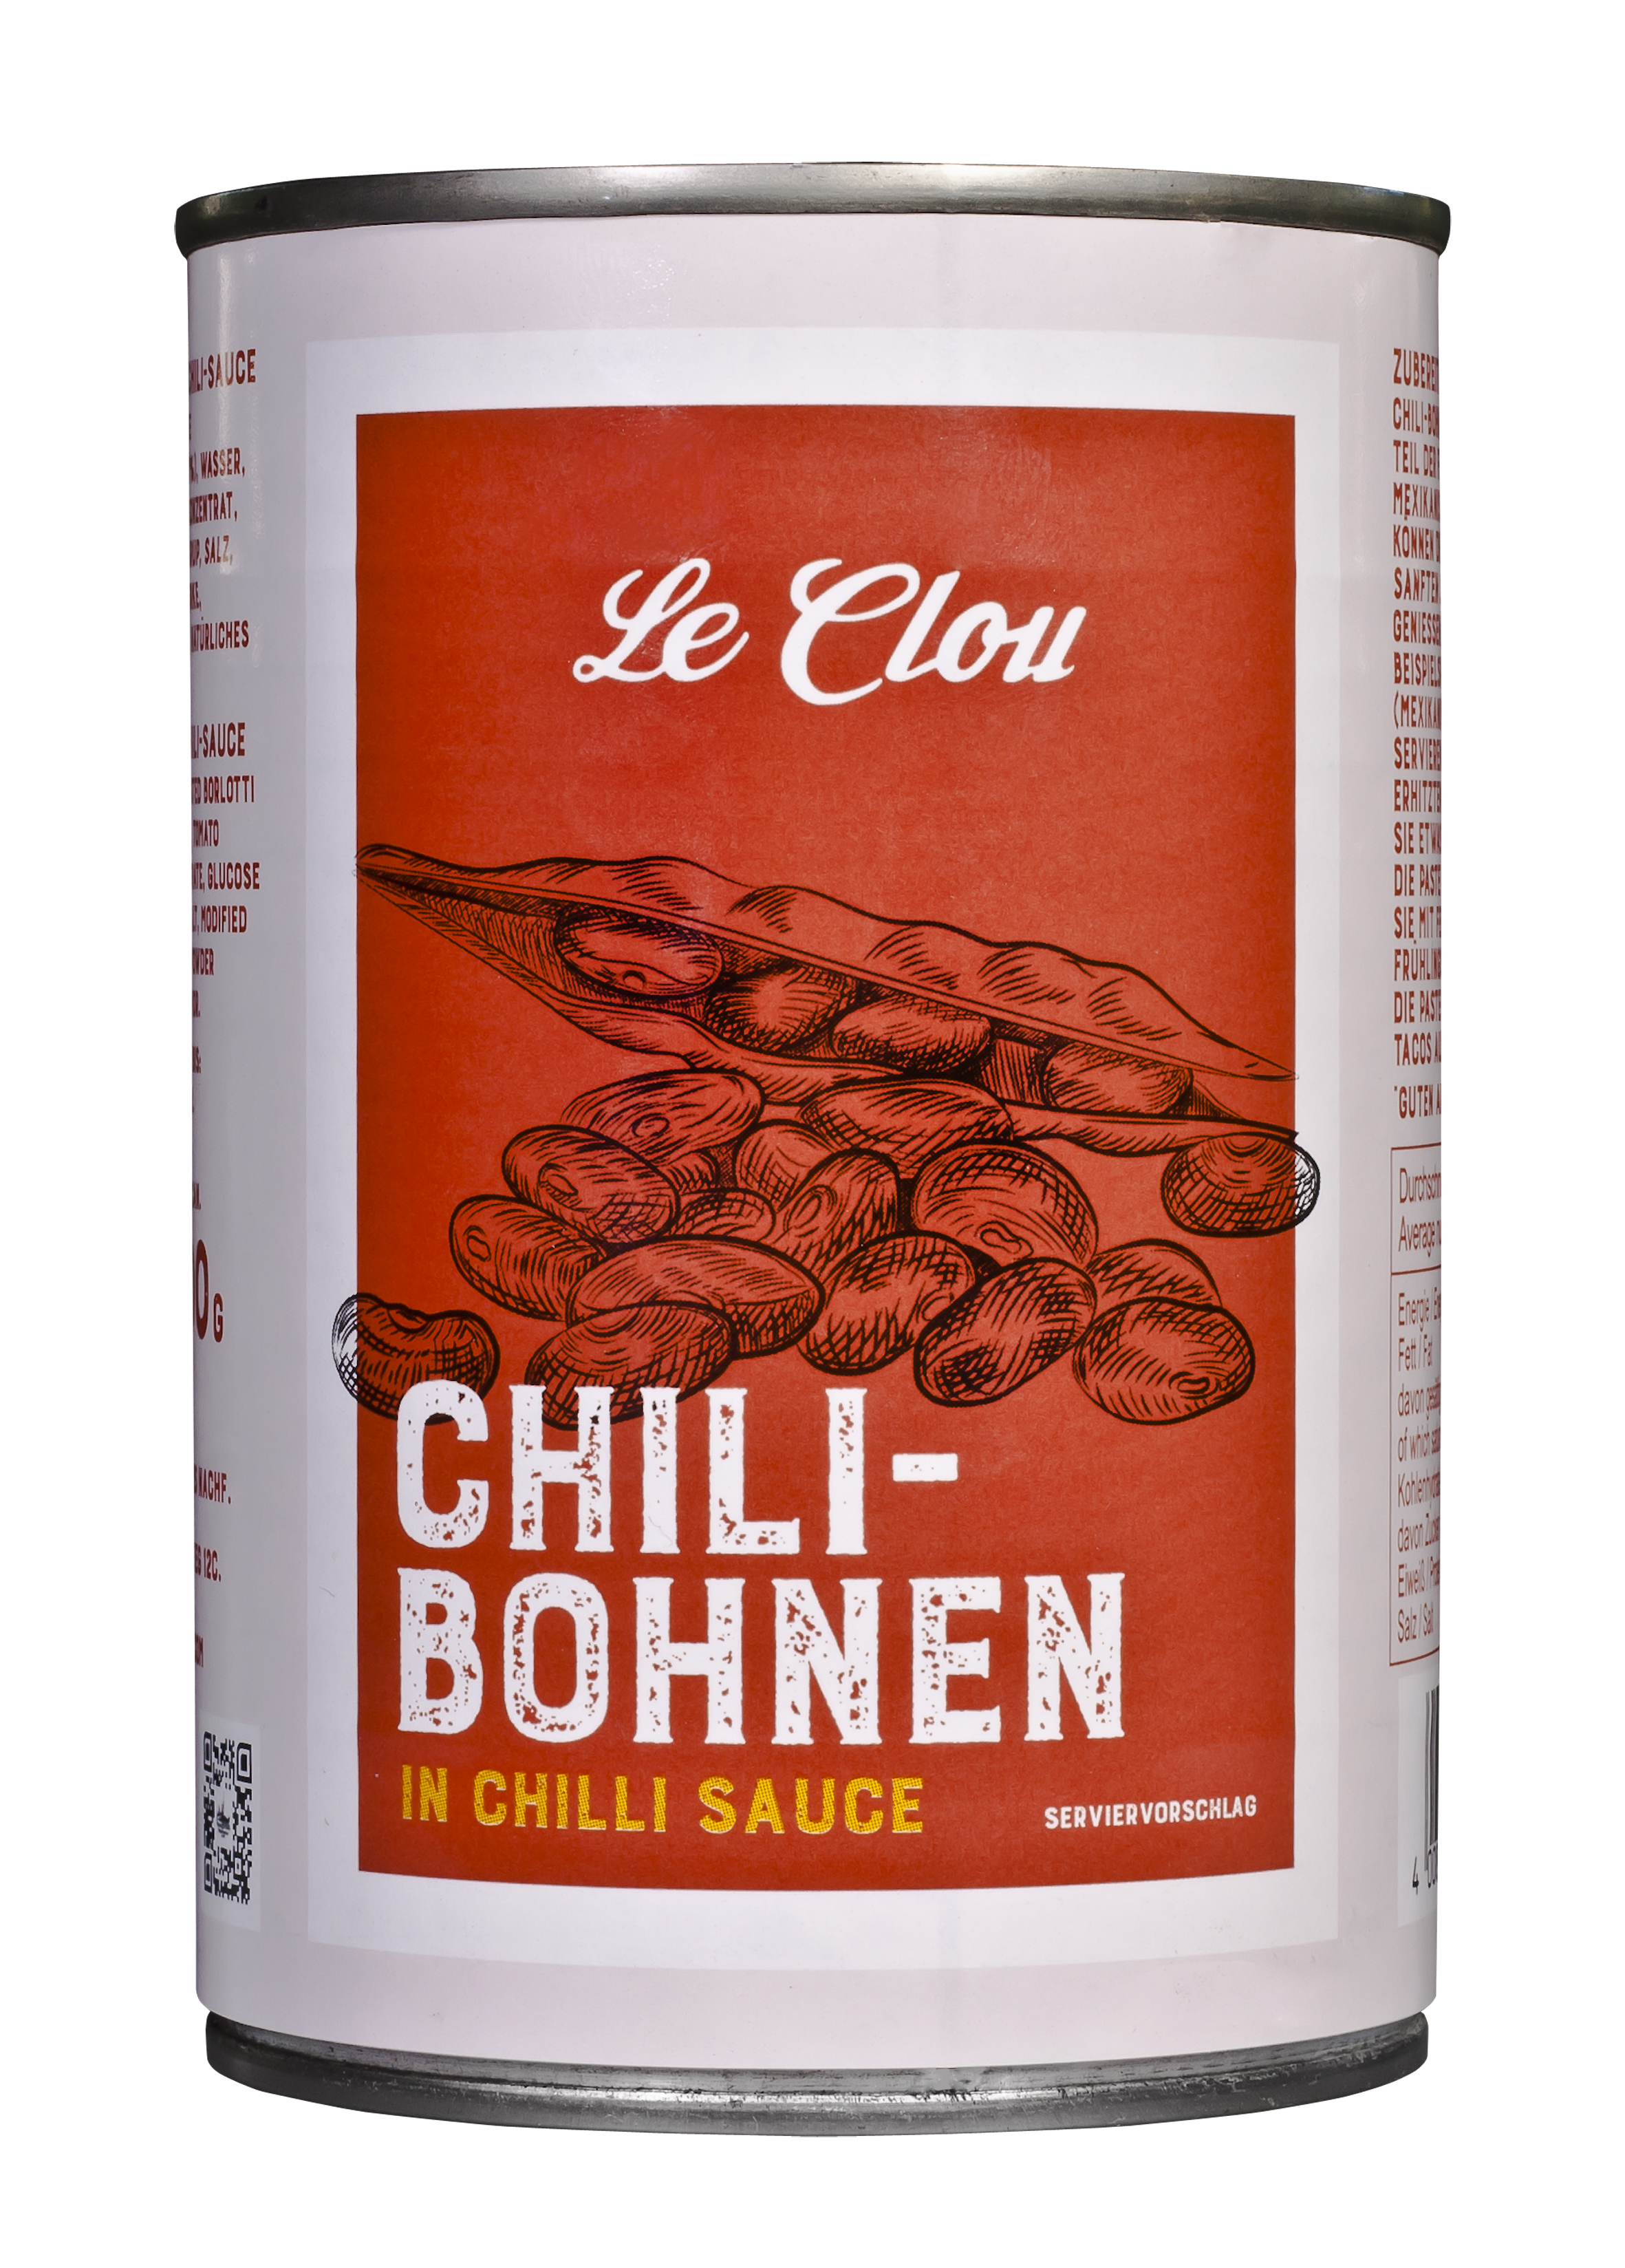 Chili-Bohnen in Chilisauce, 400 g